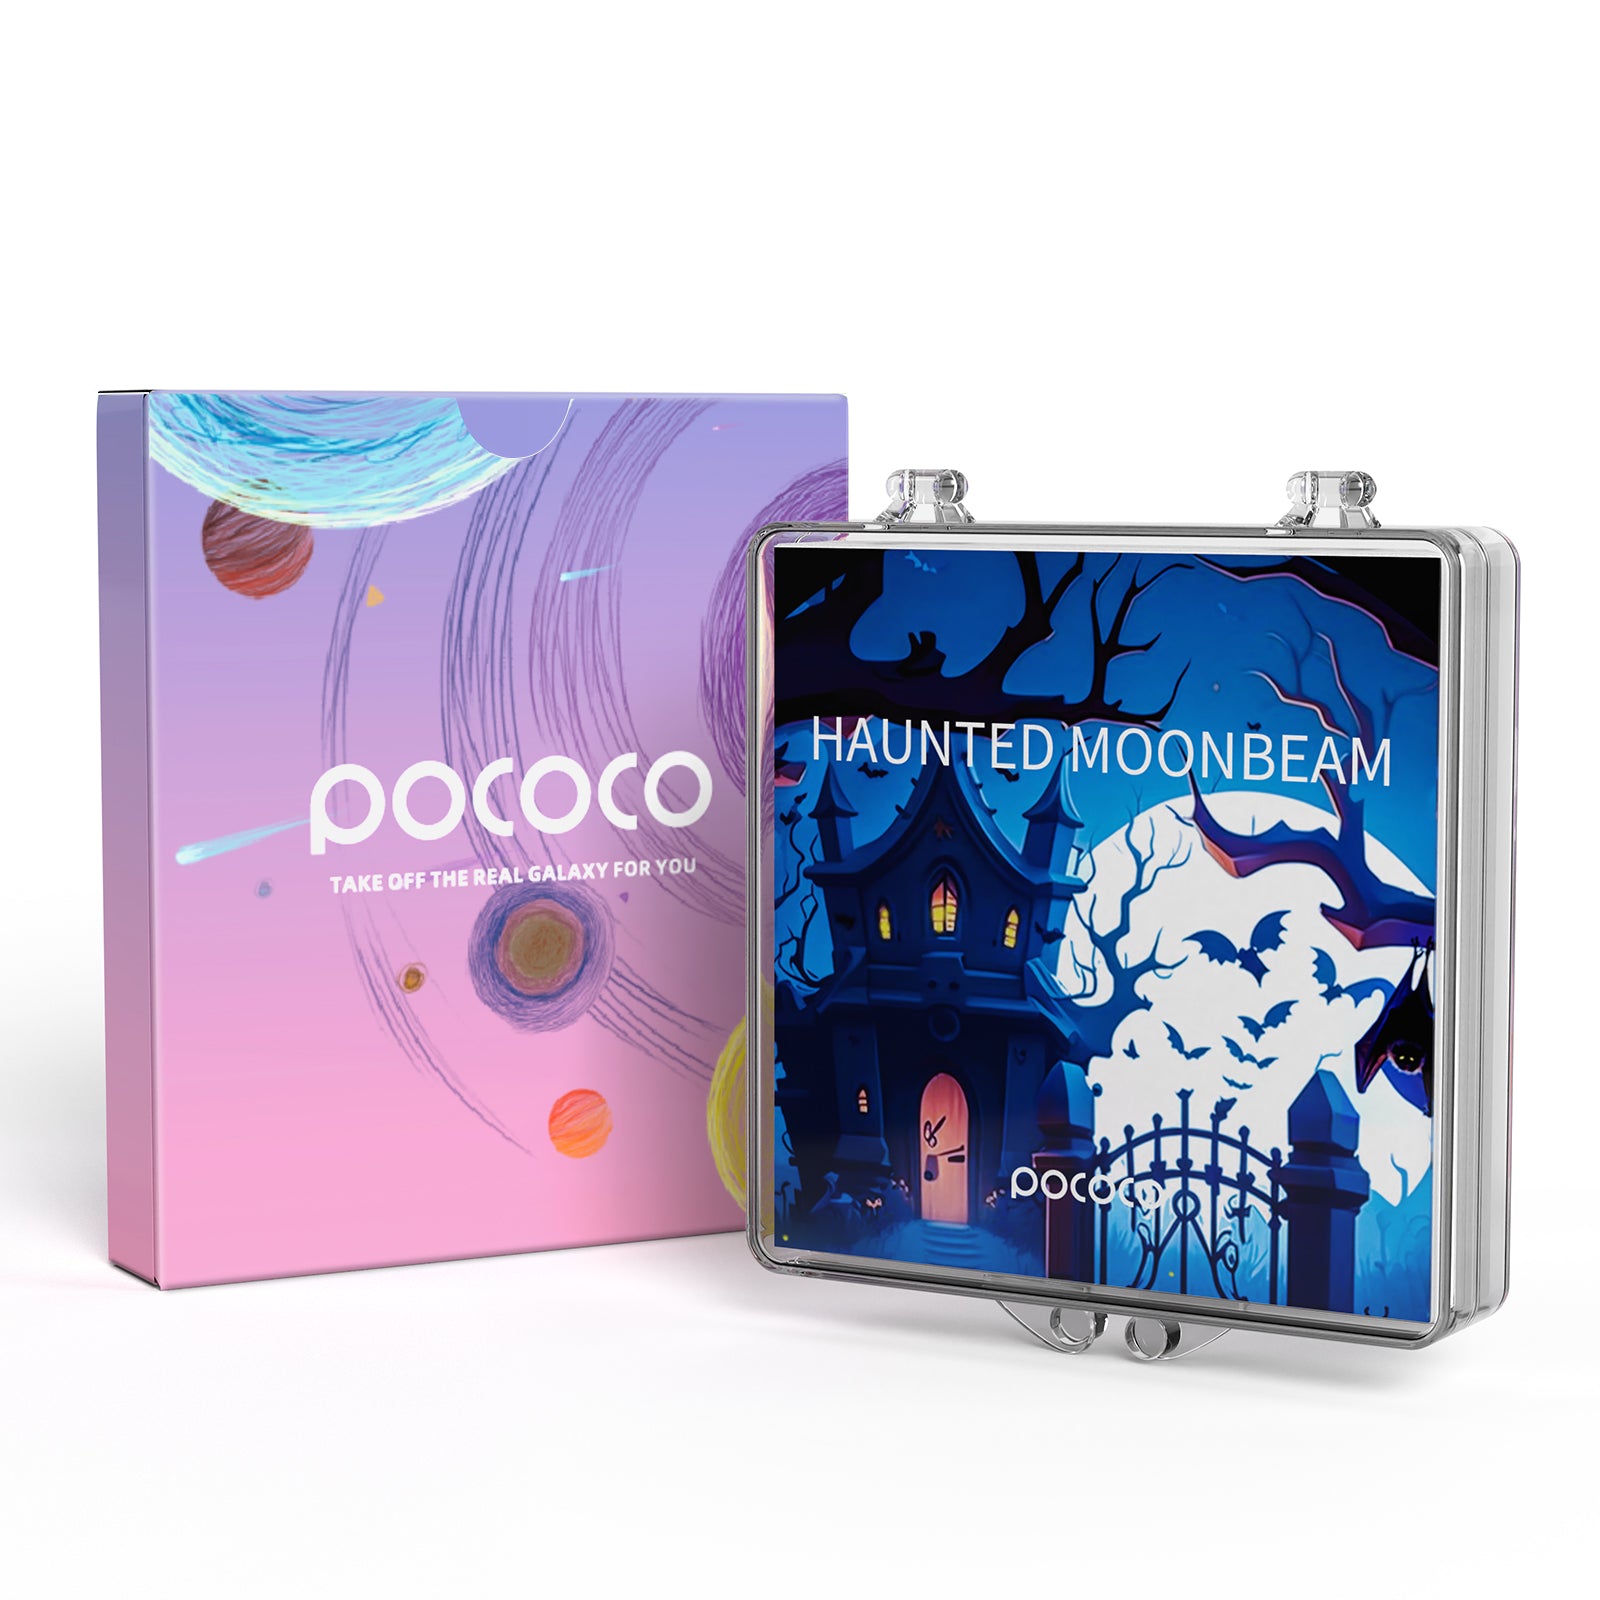 Haunted Moonbeam - POCOCO Galaxy Projector Discs